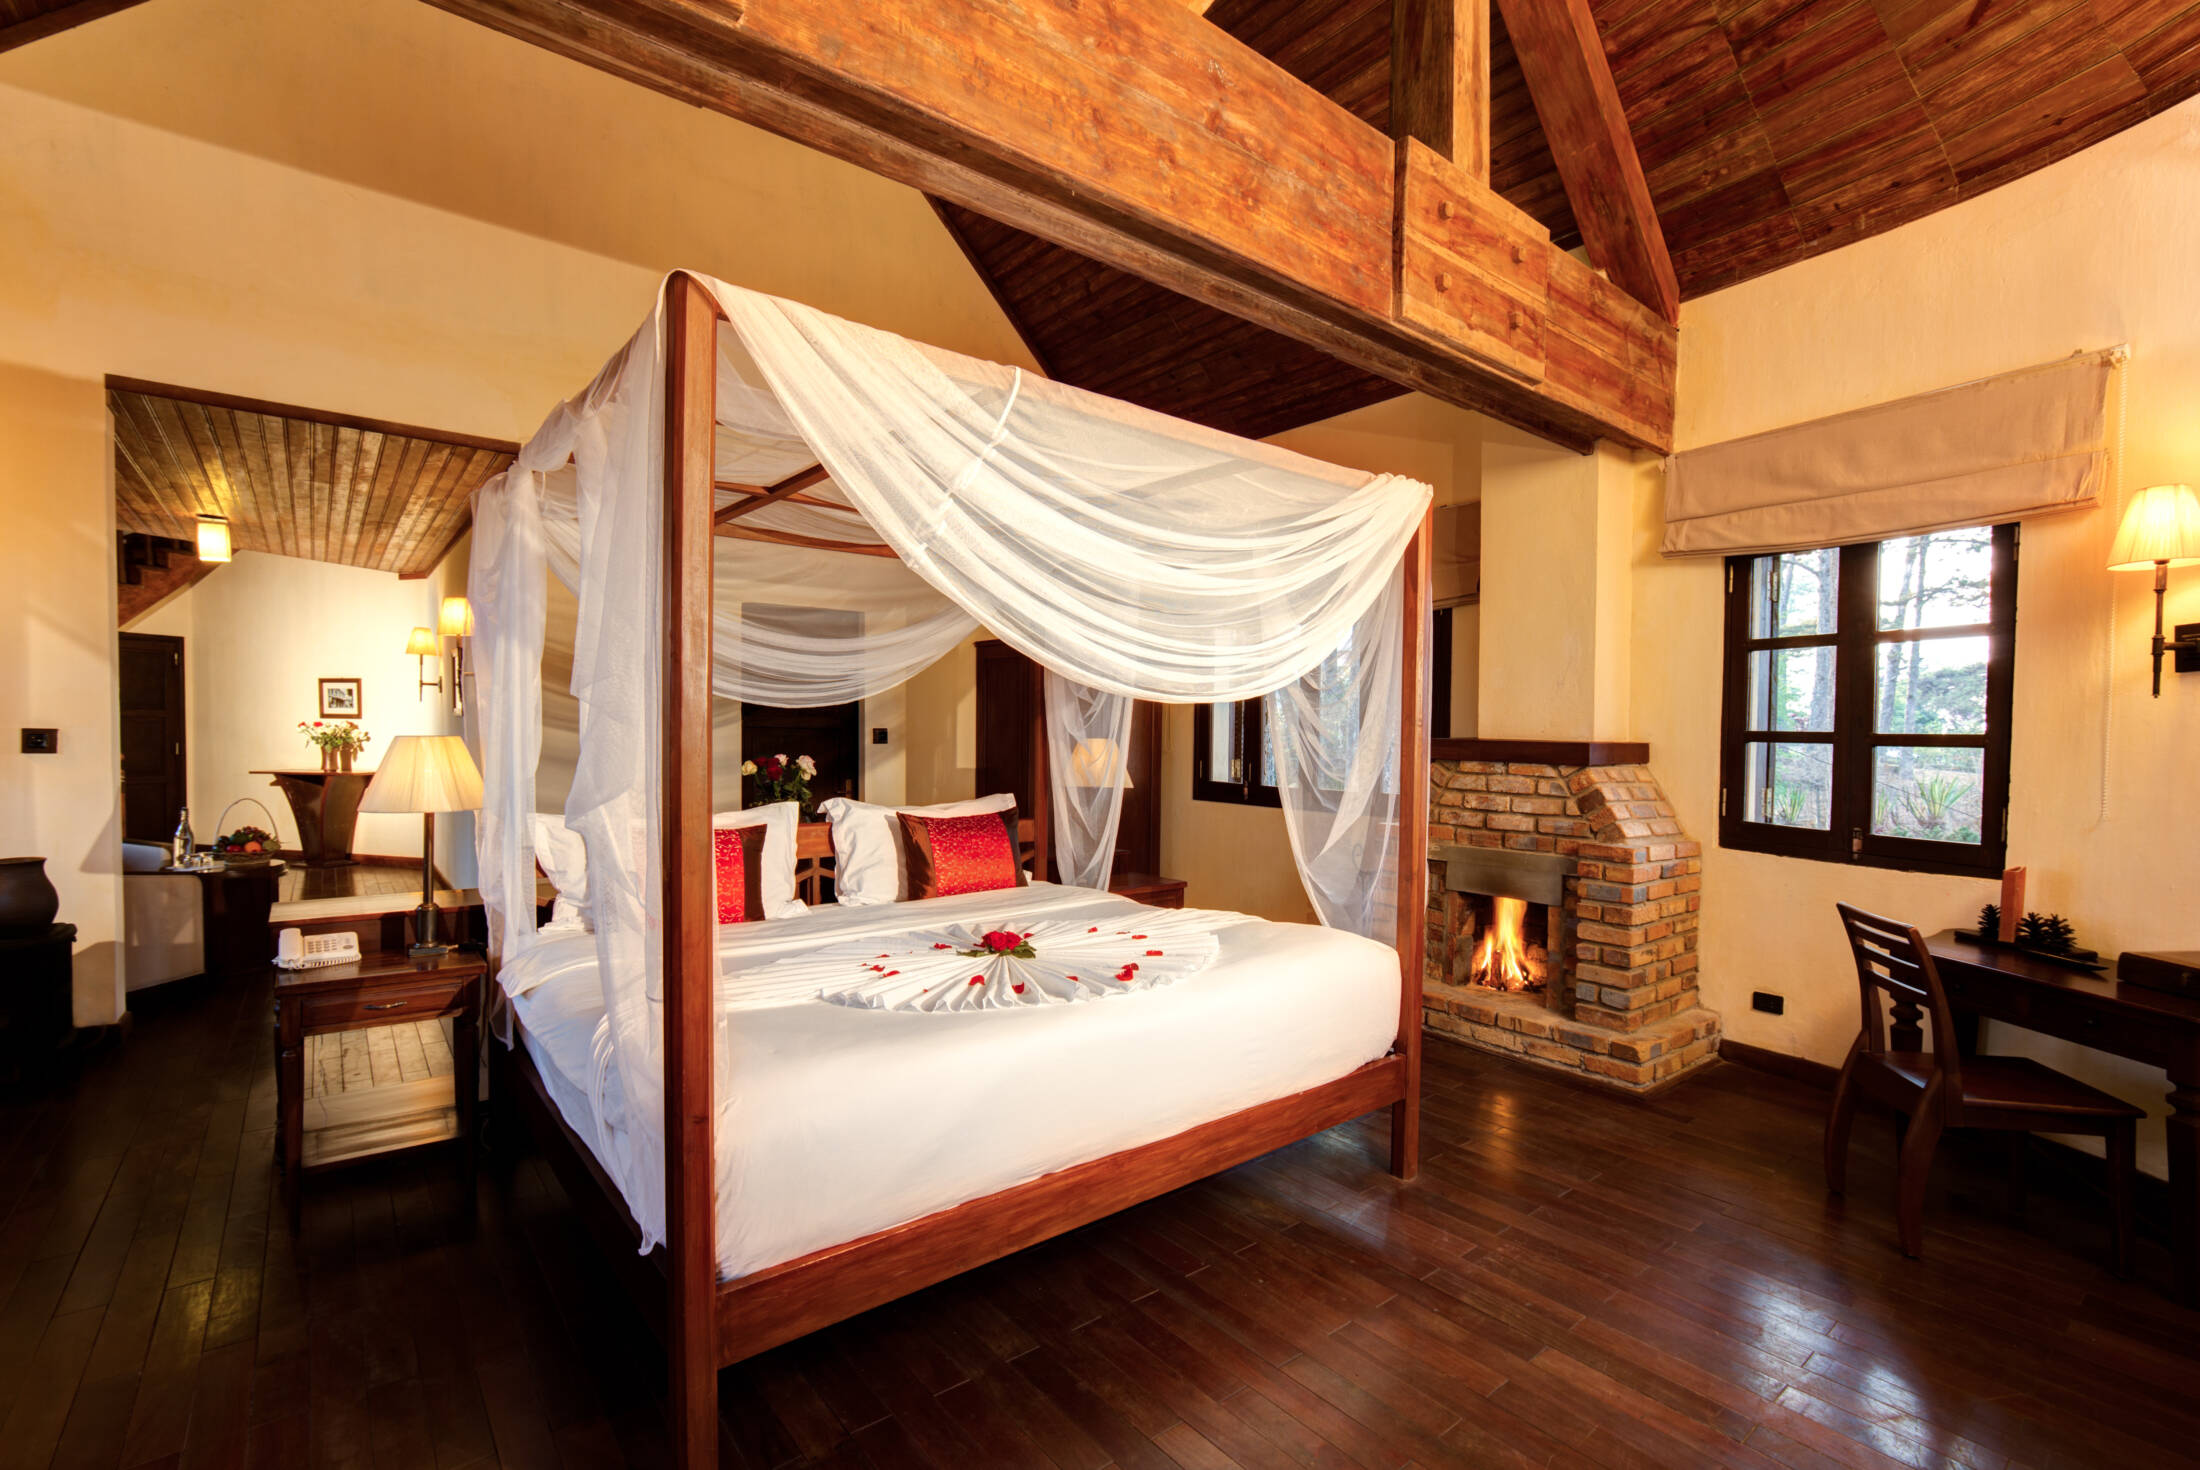 Thiết kế không gian honeymoon room decorate đẹp mê hồn cho đêm tân hôn